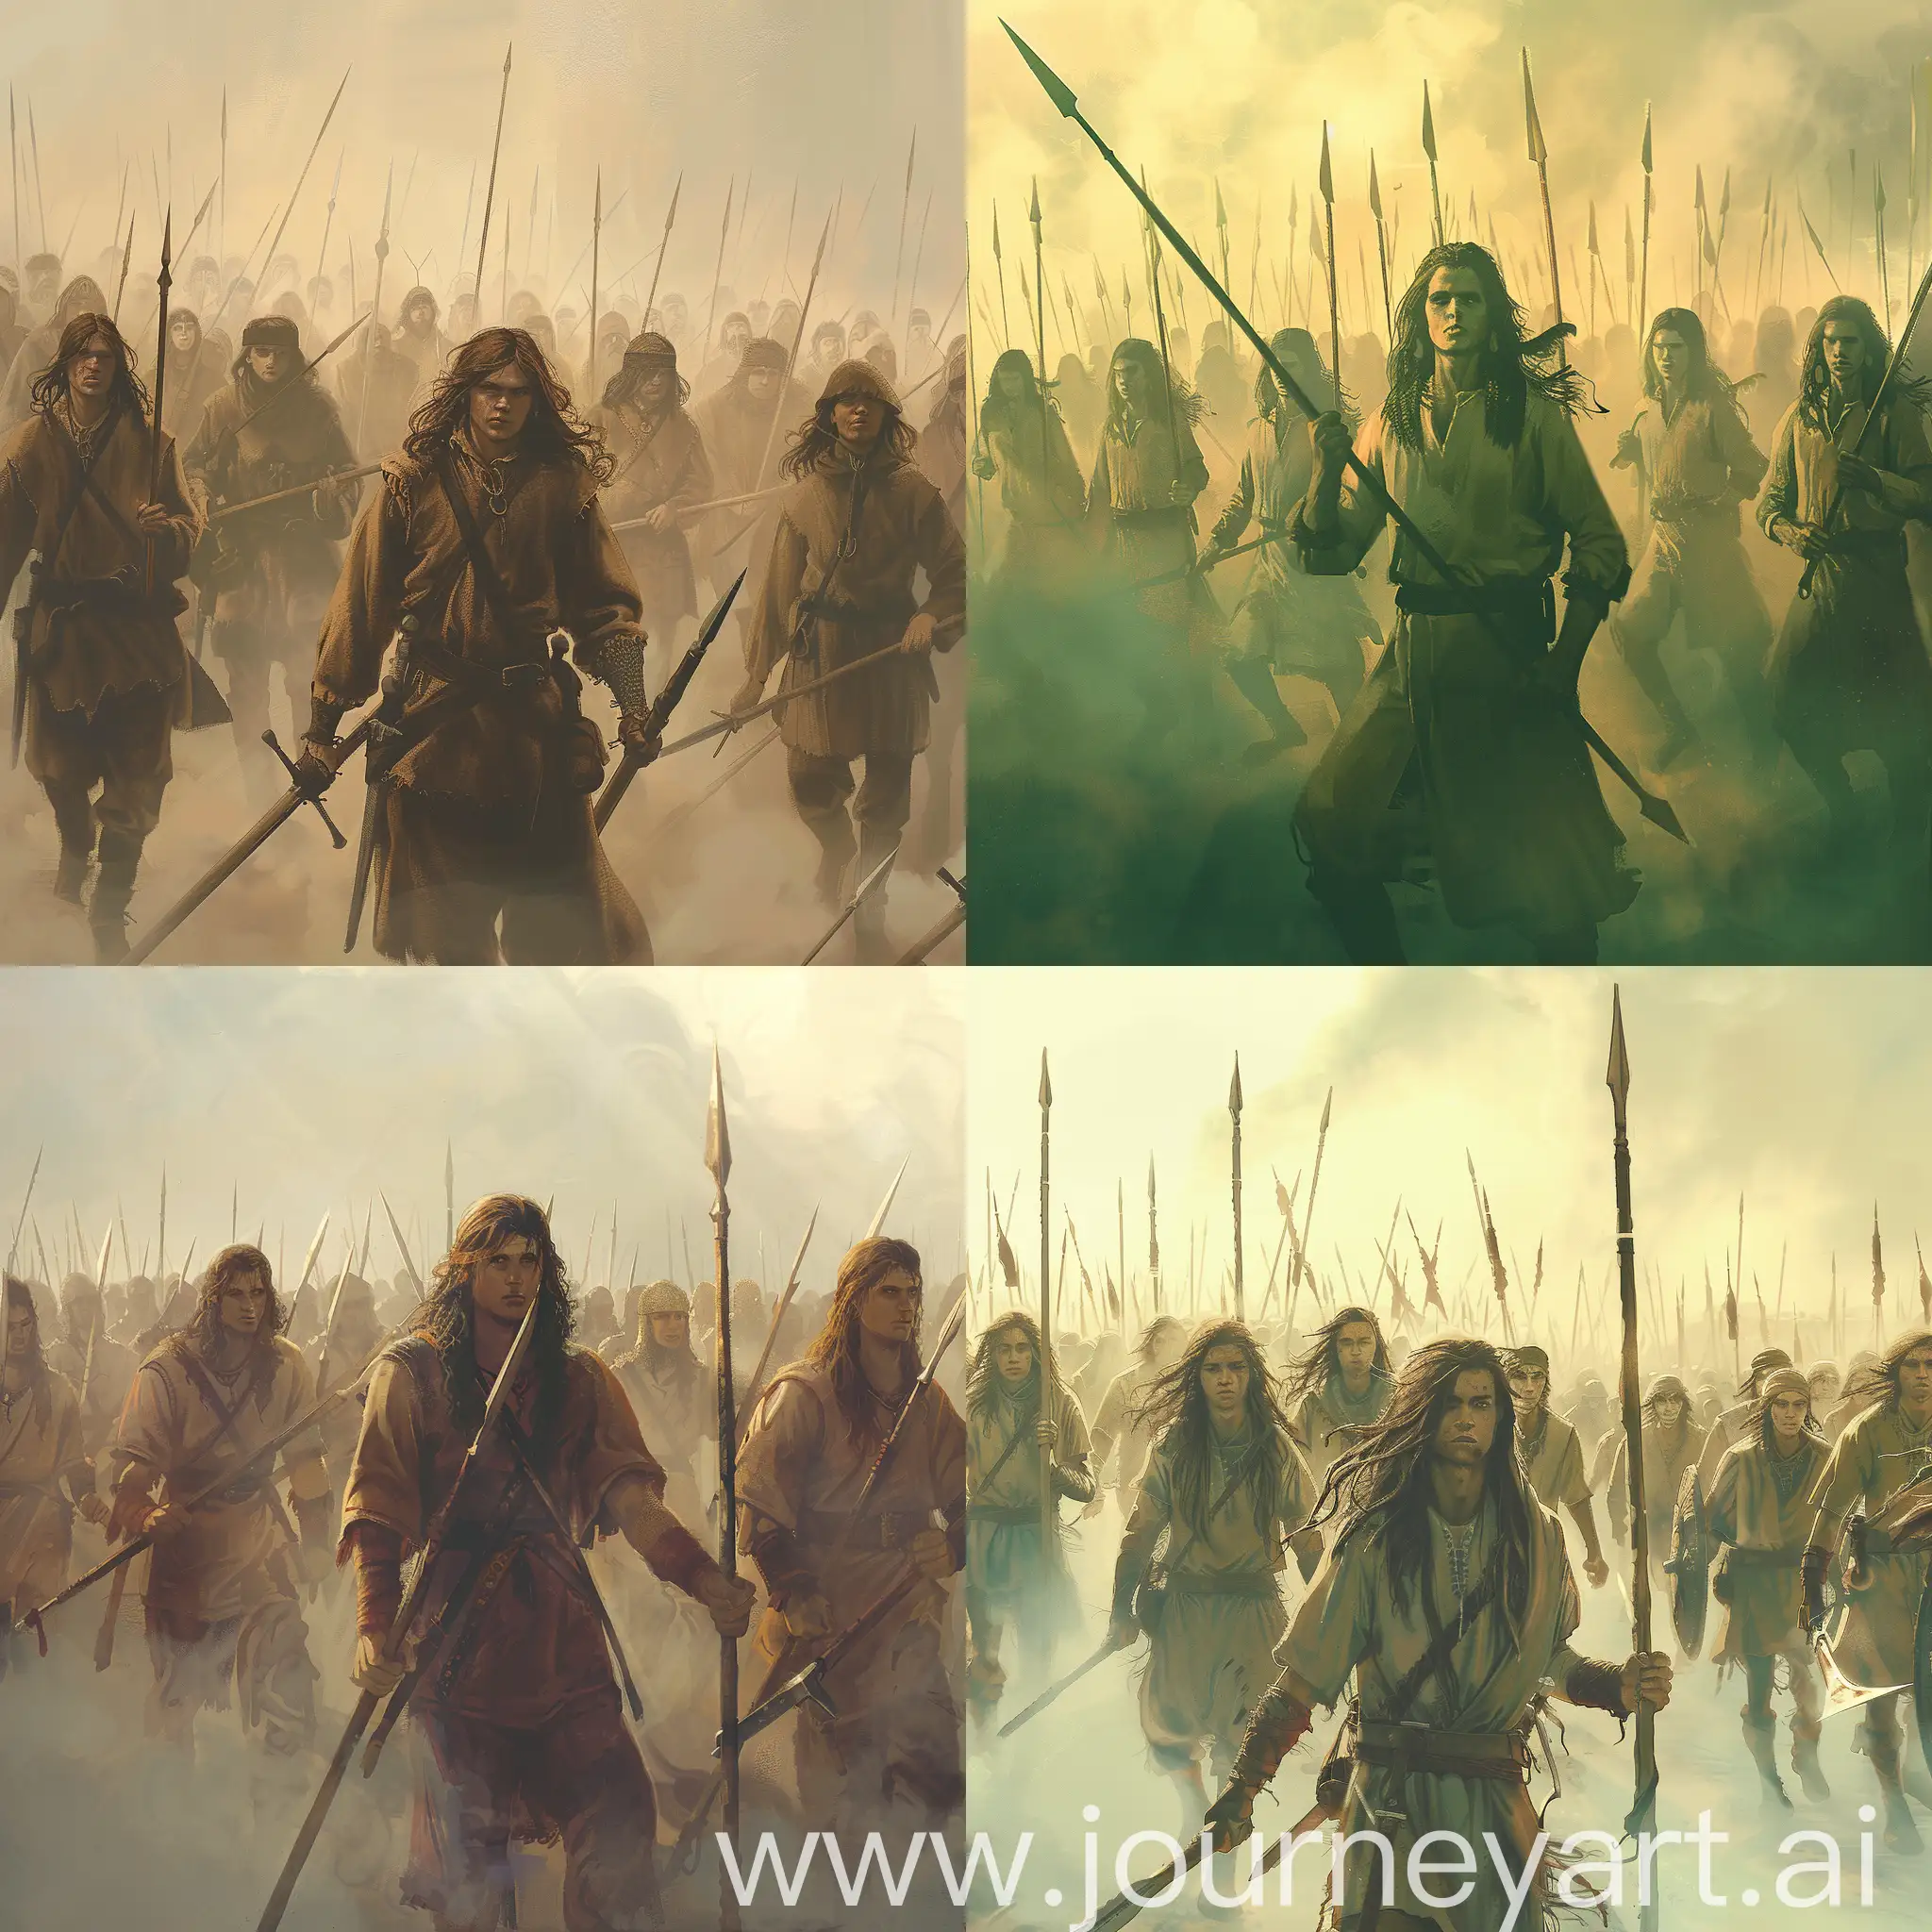 Нарисуй арт: толпа молодых мужчин-крестьян с длинными волосами и копьями в руках идет маршем на туманном фоне. Это в стиле изображений из игры Crusader kings 3.